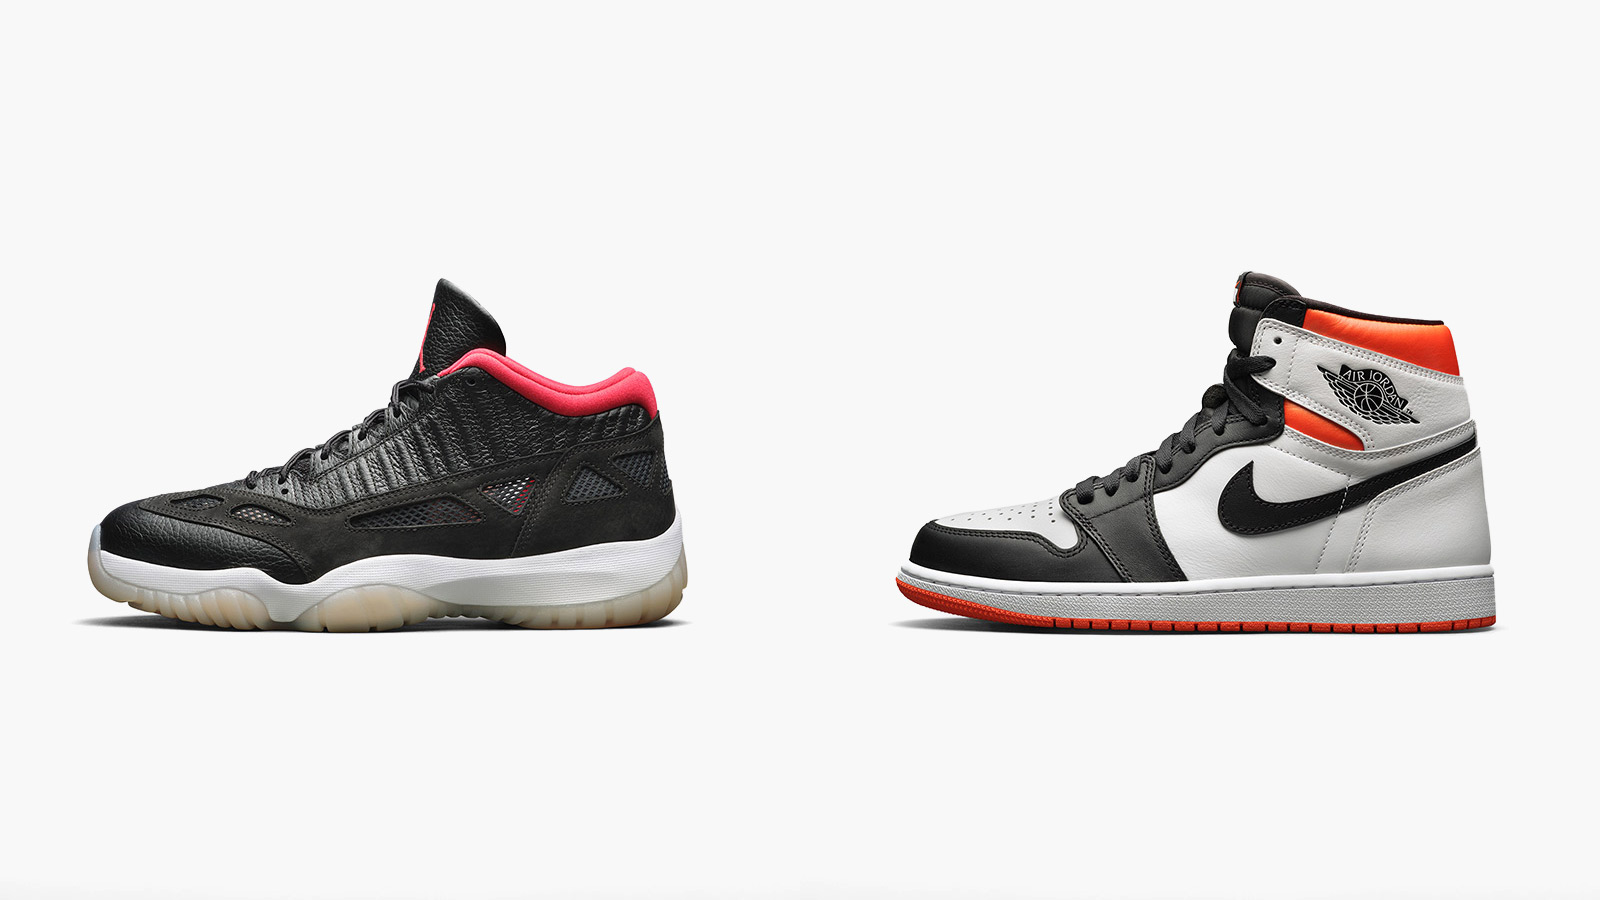 2021 Fall Jordan Retro Sneakers